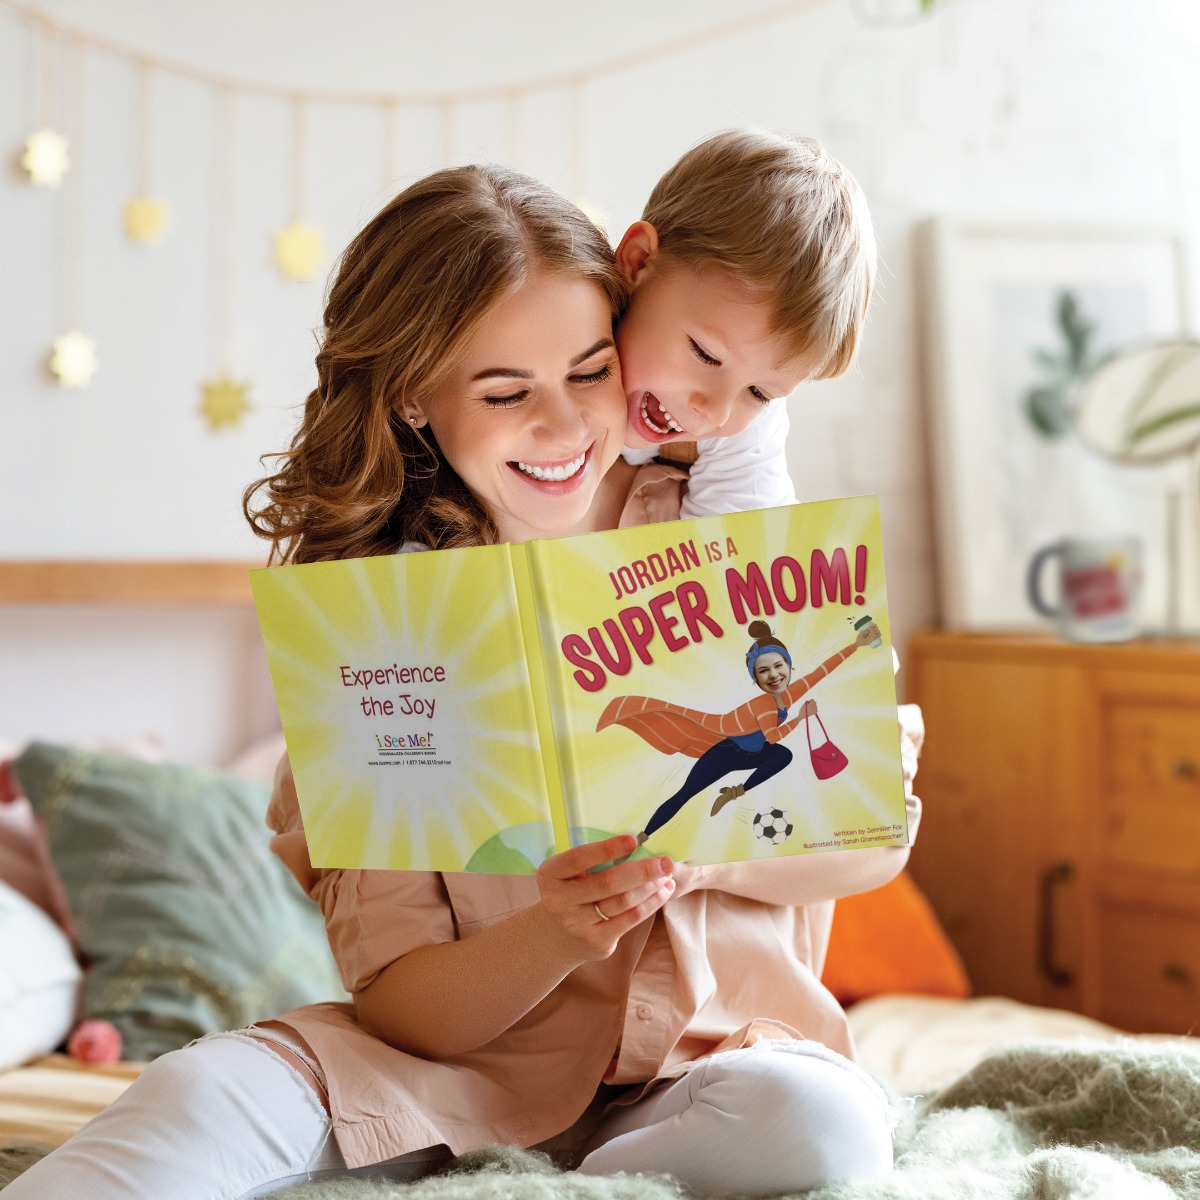 Super Mom! Personalized Book